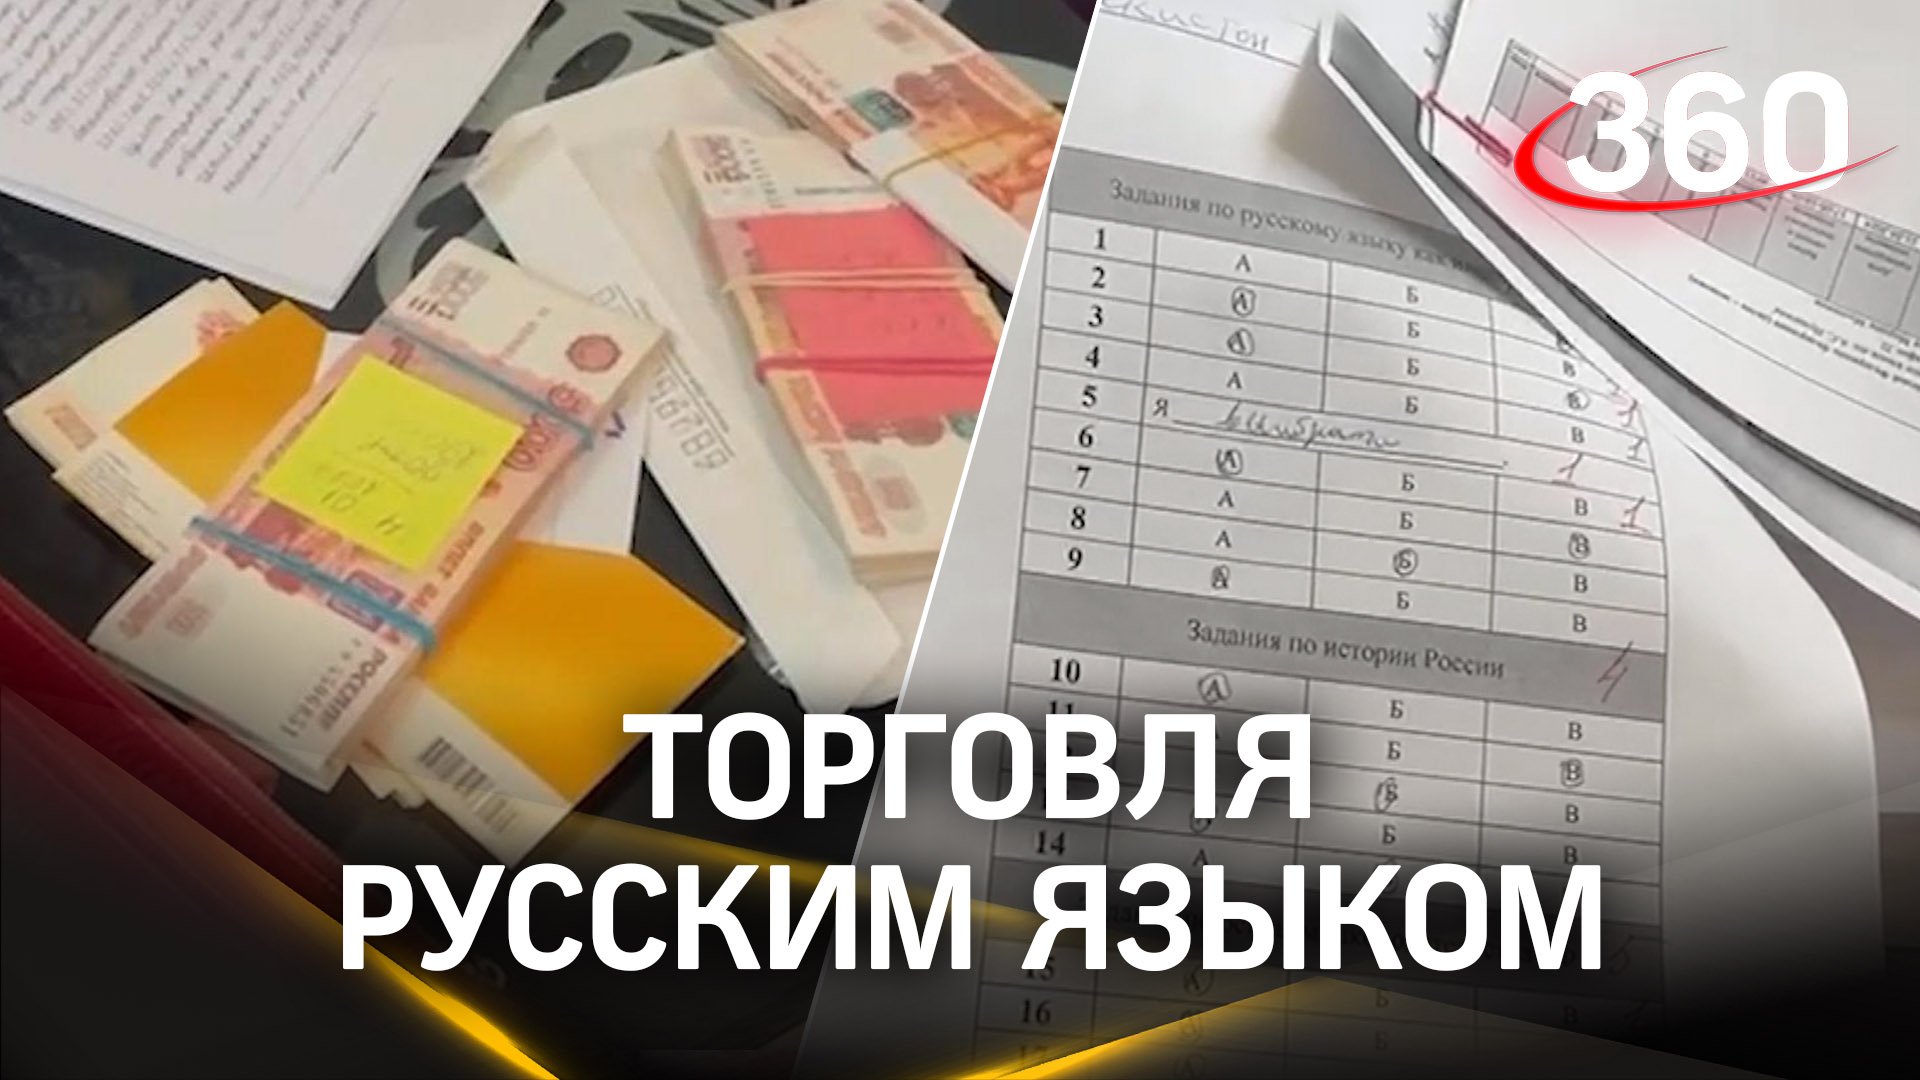 Продавали русский язык мигрантам - сотрудники Института Пушкина задержаны за поддельные тесты